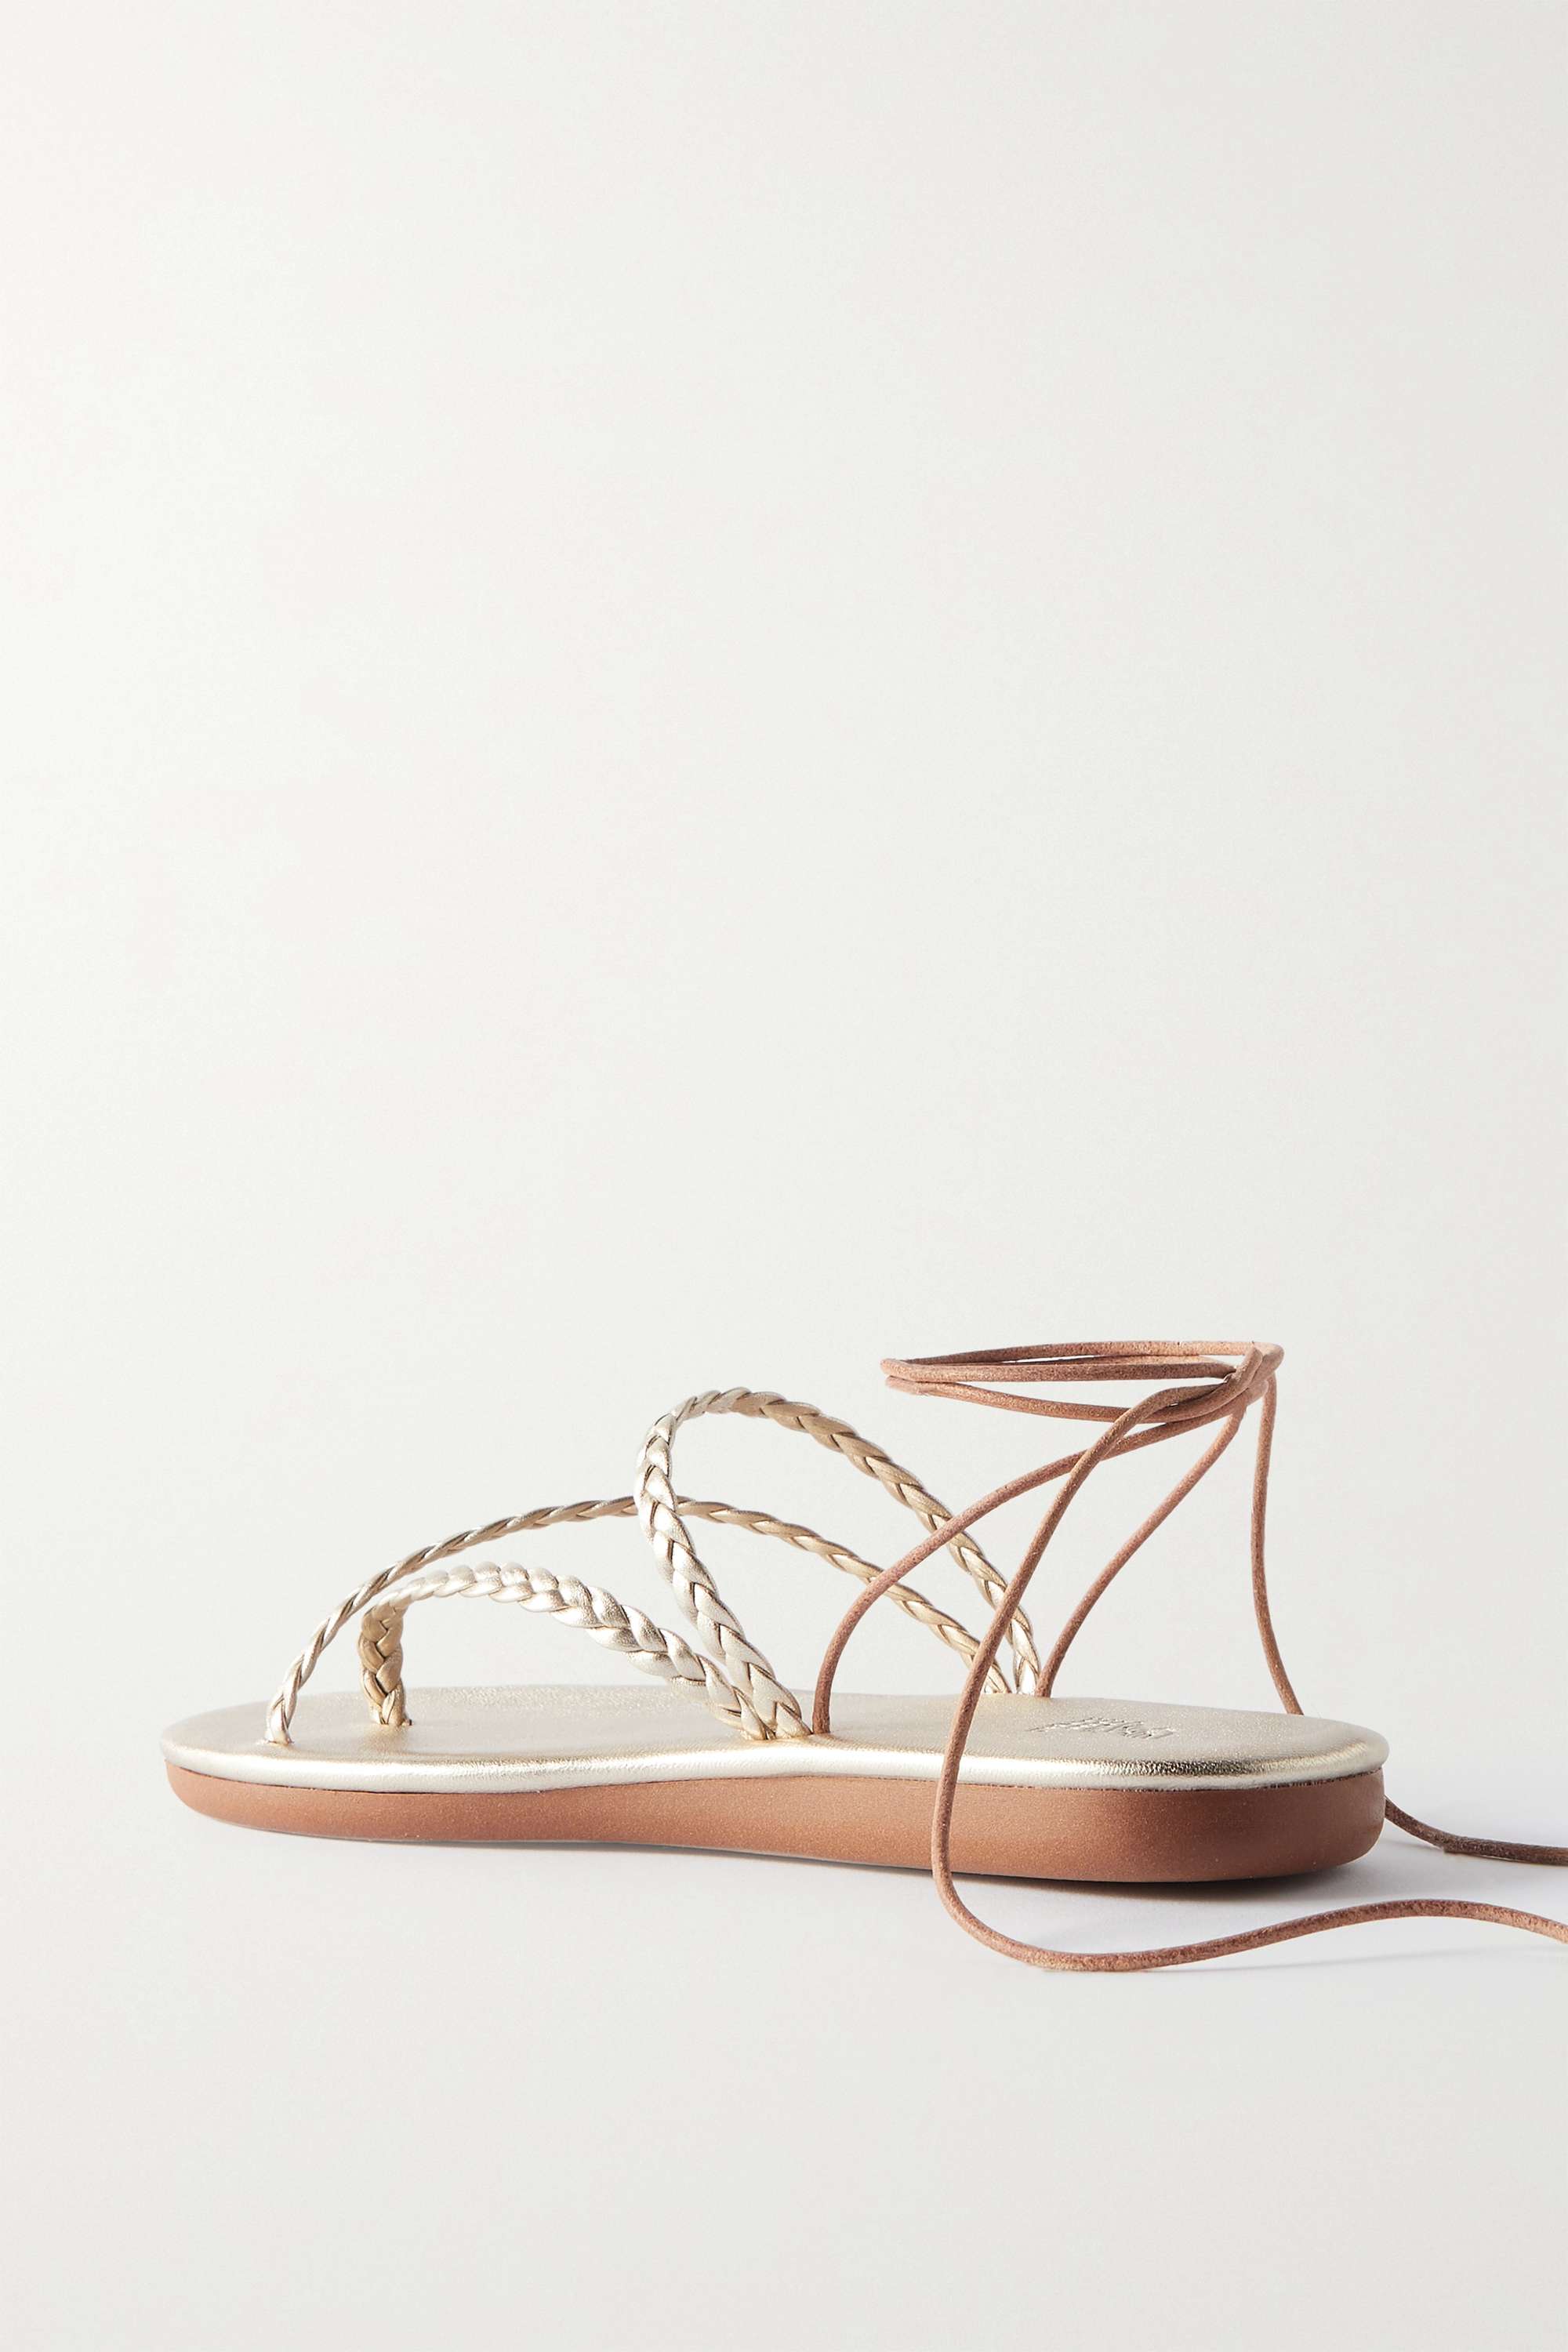 ANCIENT GREEK SANDALS плетеные сандалии Plage из металлизированной кожи, золото светло коричневые сандалии desmos ancient greek sandals